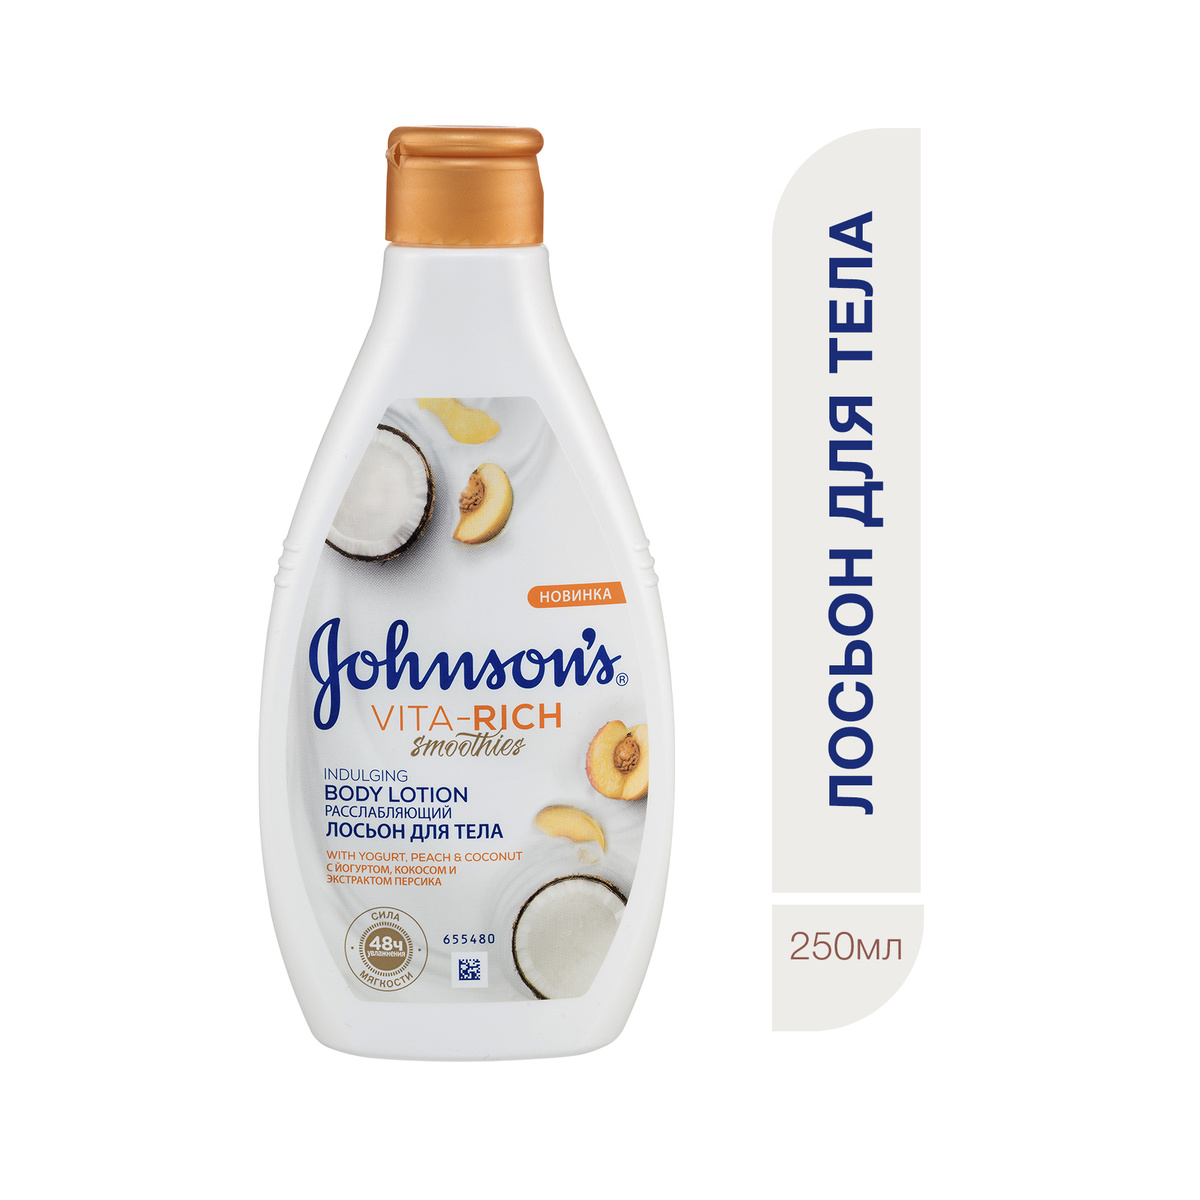 Johnson's Vita-Rich Body Care Лосьон для тела Смузи с йогуртом, кокосом и экстрактом персика расслабляющий, #1